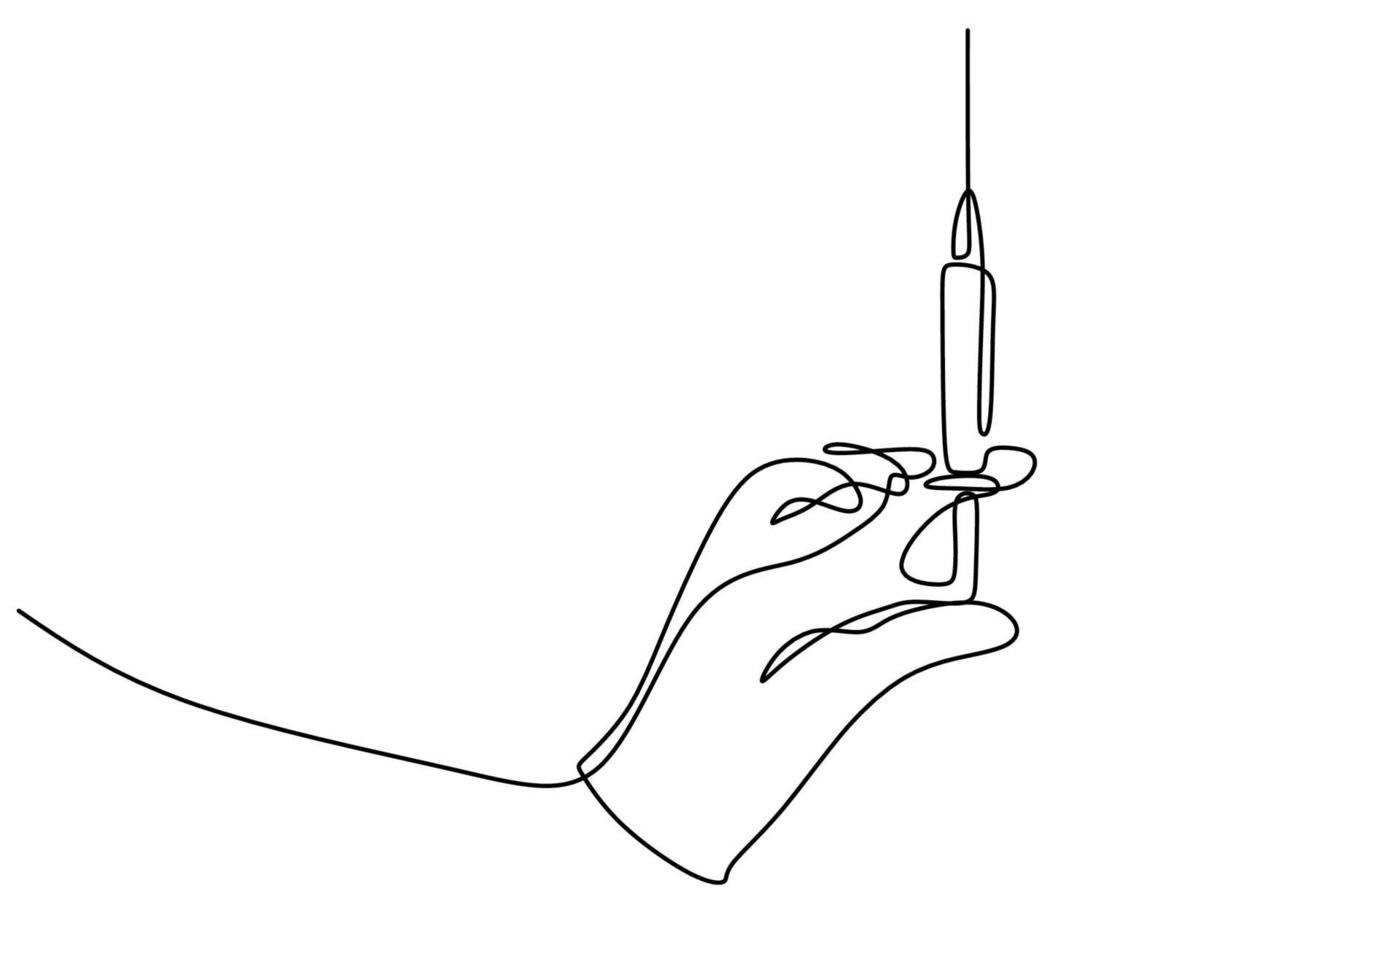 disegno continuo di una linea di una mano con iniezione. illustrazione di attrezzature o strumenti medici disegnata a mano. una mano che tiene un ago per il test del vaccino corona isolato su sfondo bianco. vettore